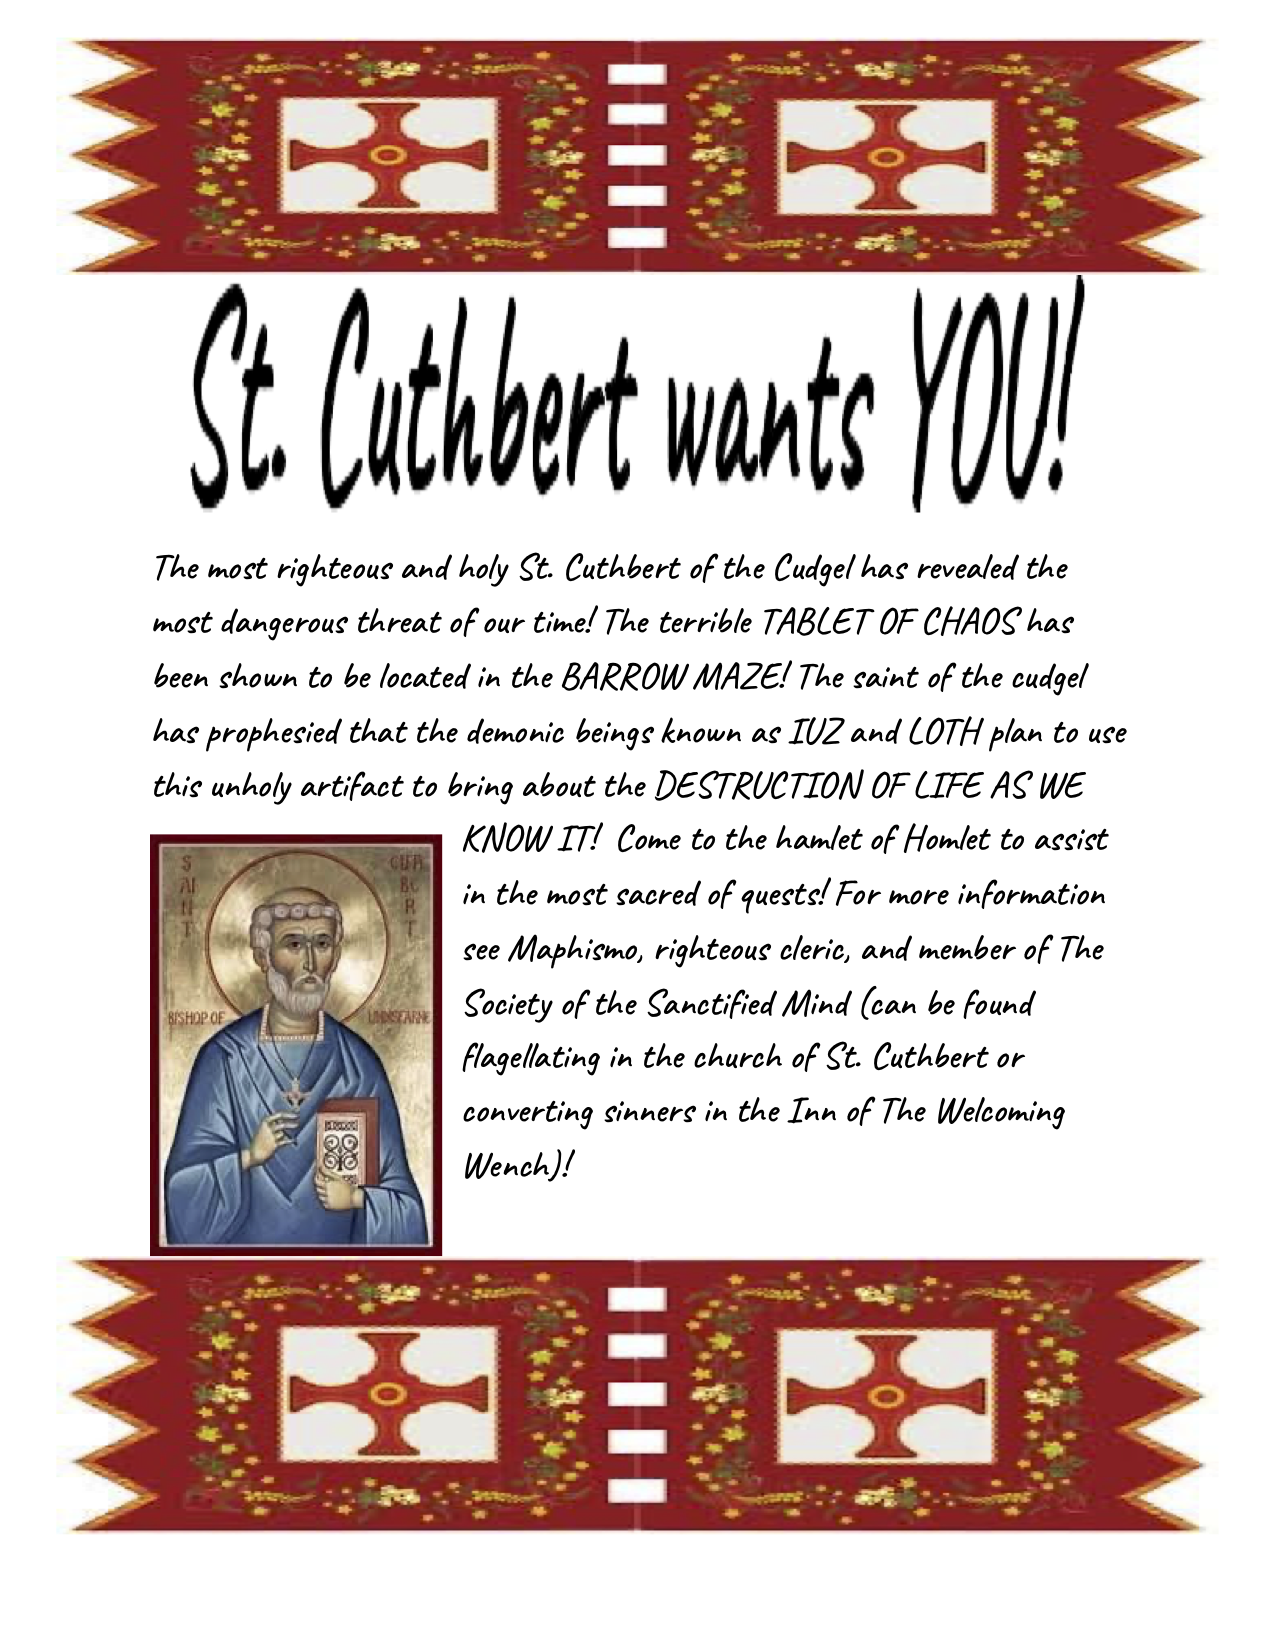 St. Cuthbert wants YOU! (flyer)